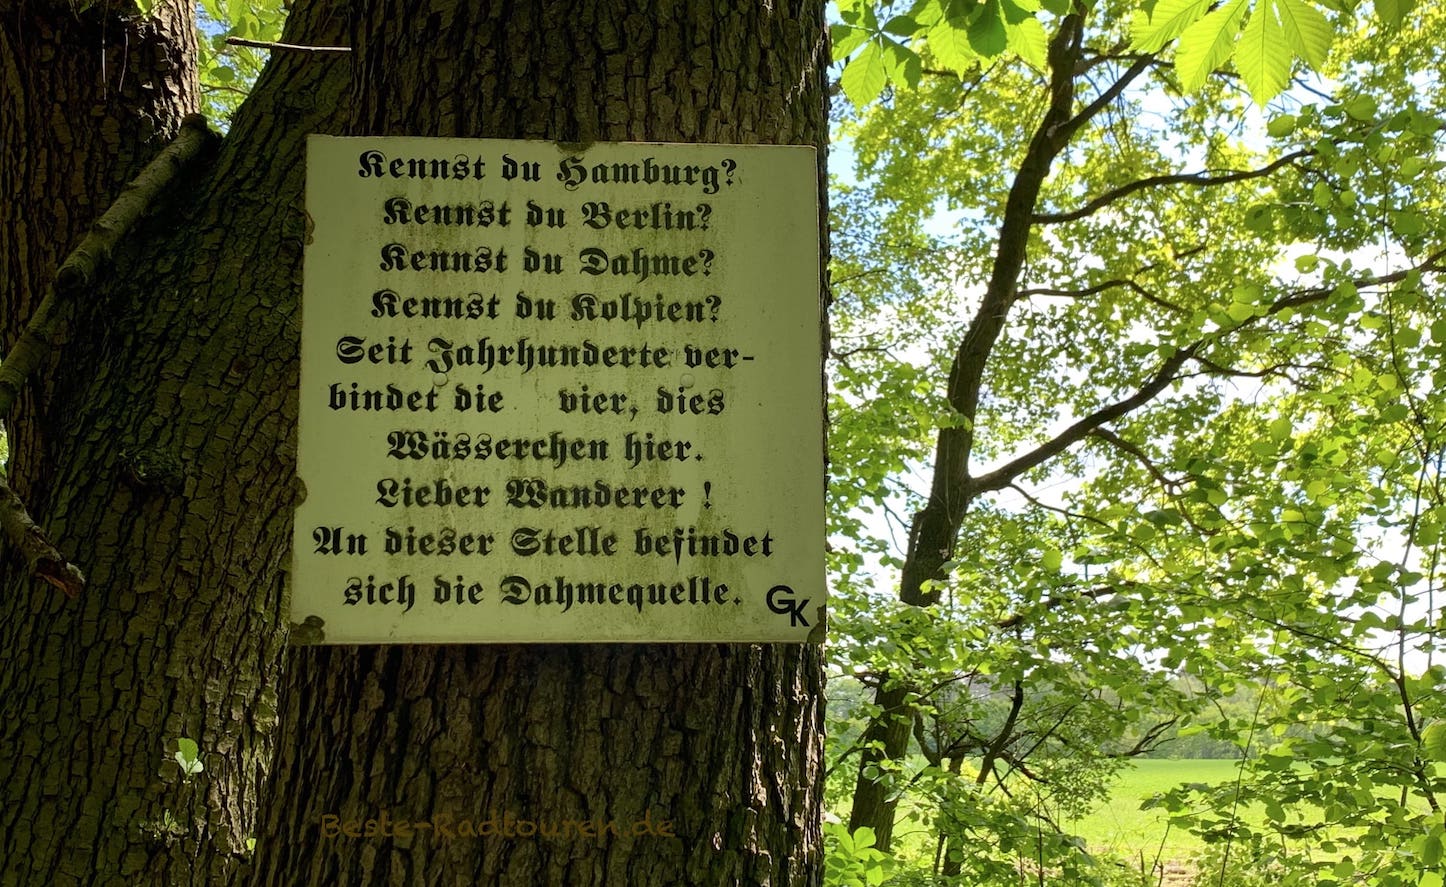 Ziel vom Dahme-Radweg: Tafel / Schild, das 2 km entfernt von Schöna-Kolpien im Wald die Dahme-Quelle anzeigt